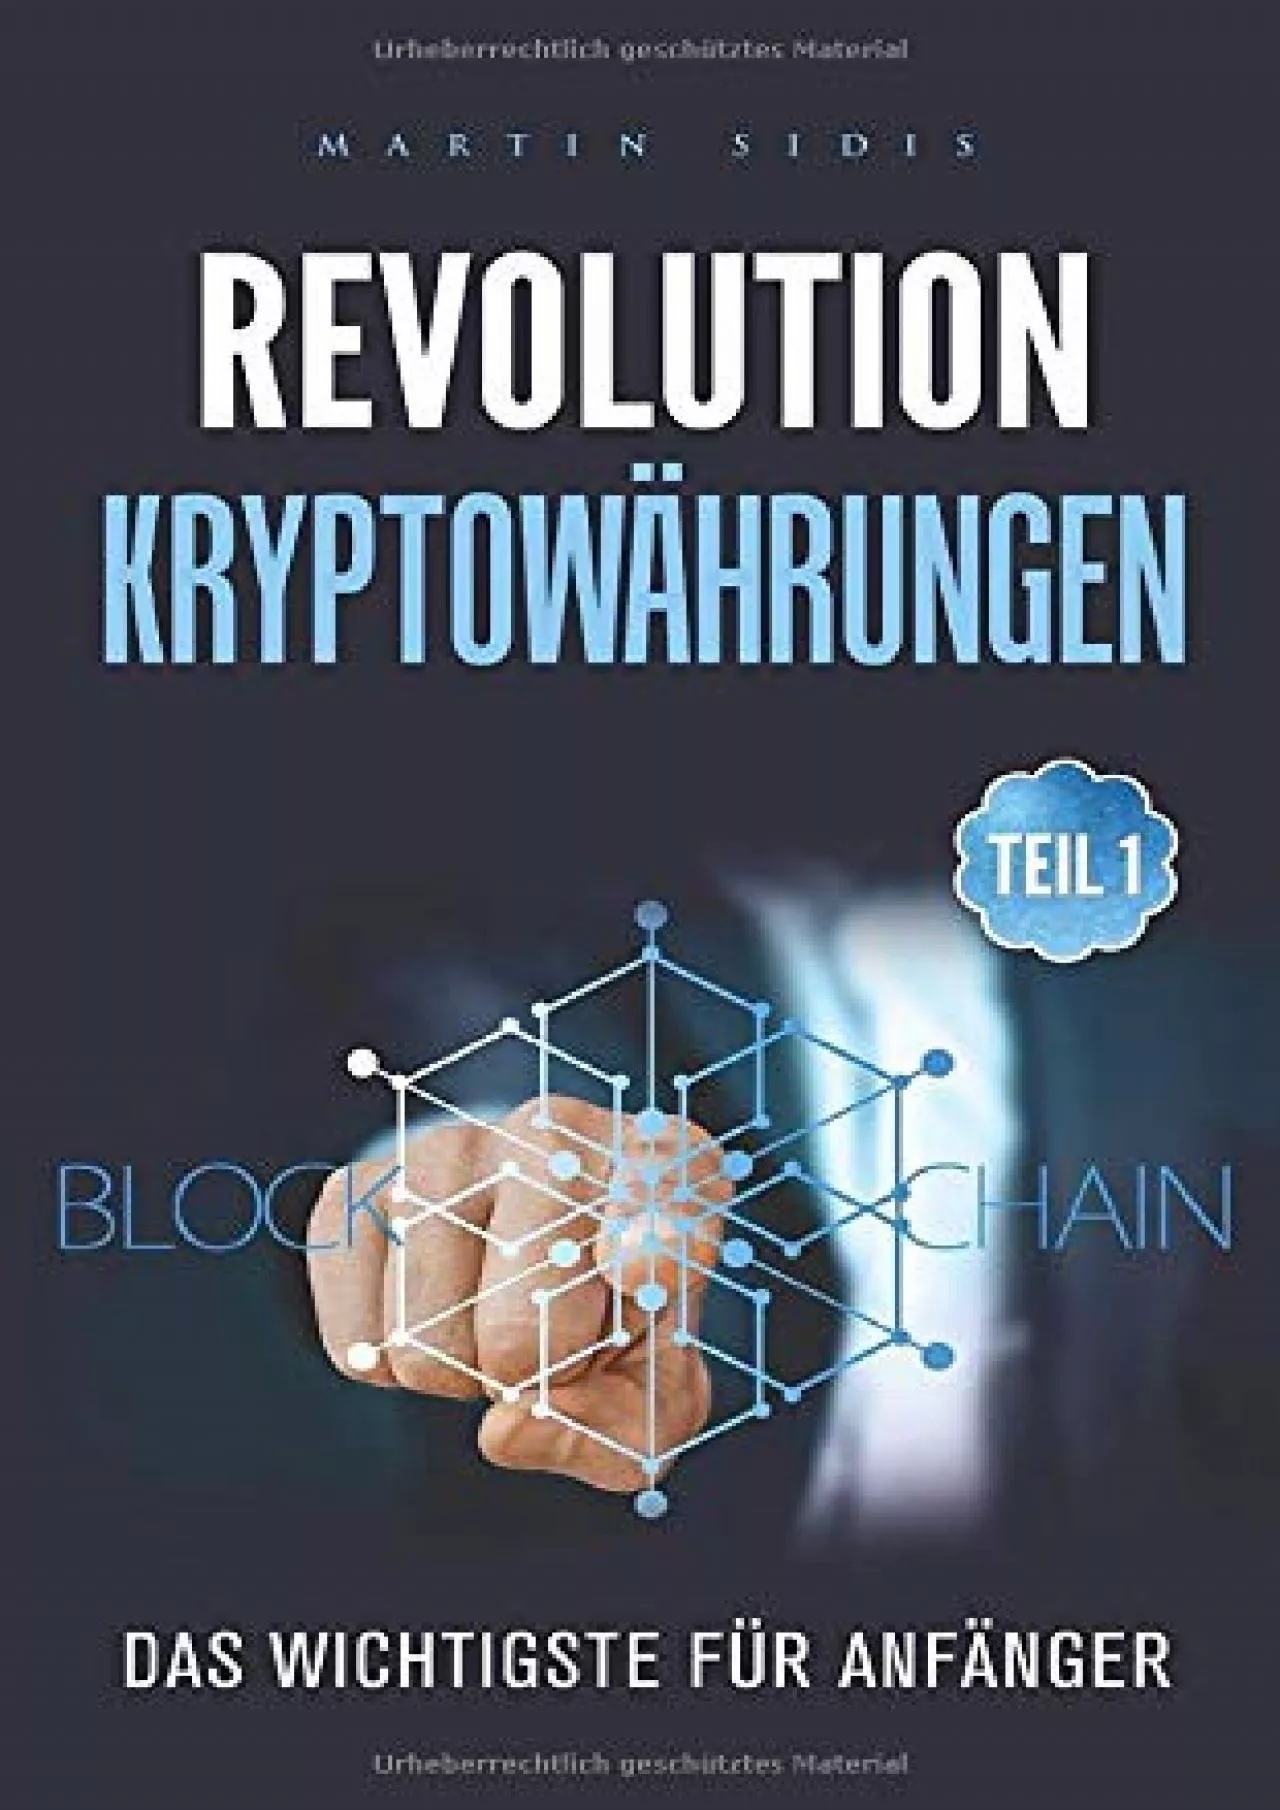 (READ)-Revolution: Kryptowährungen: Teil 1, Das Wichtigste für Anfänger (German Edition)